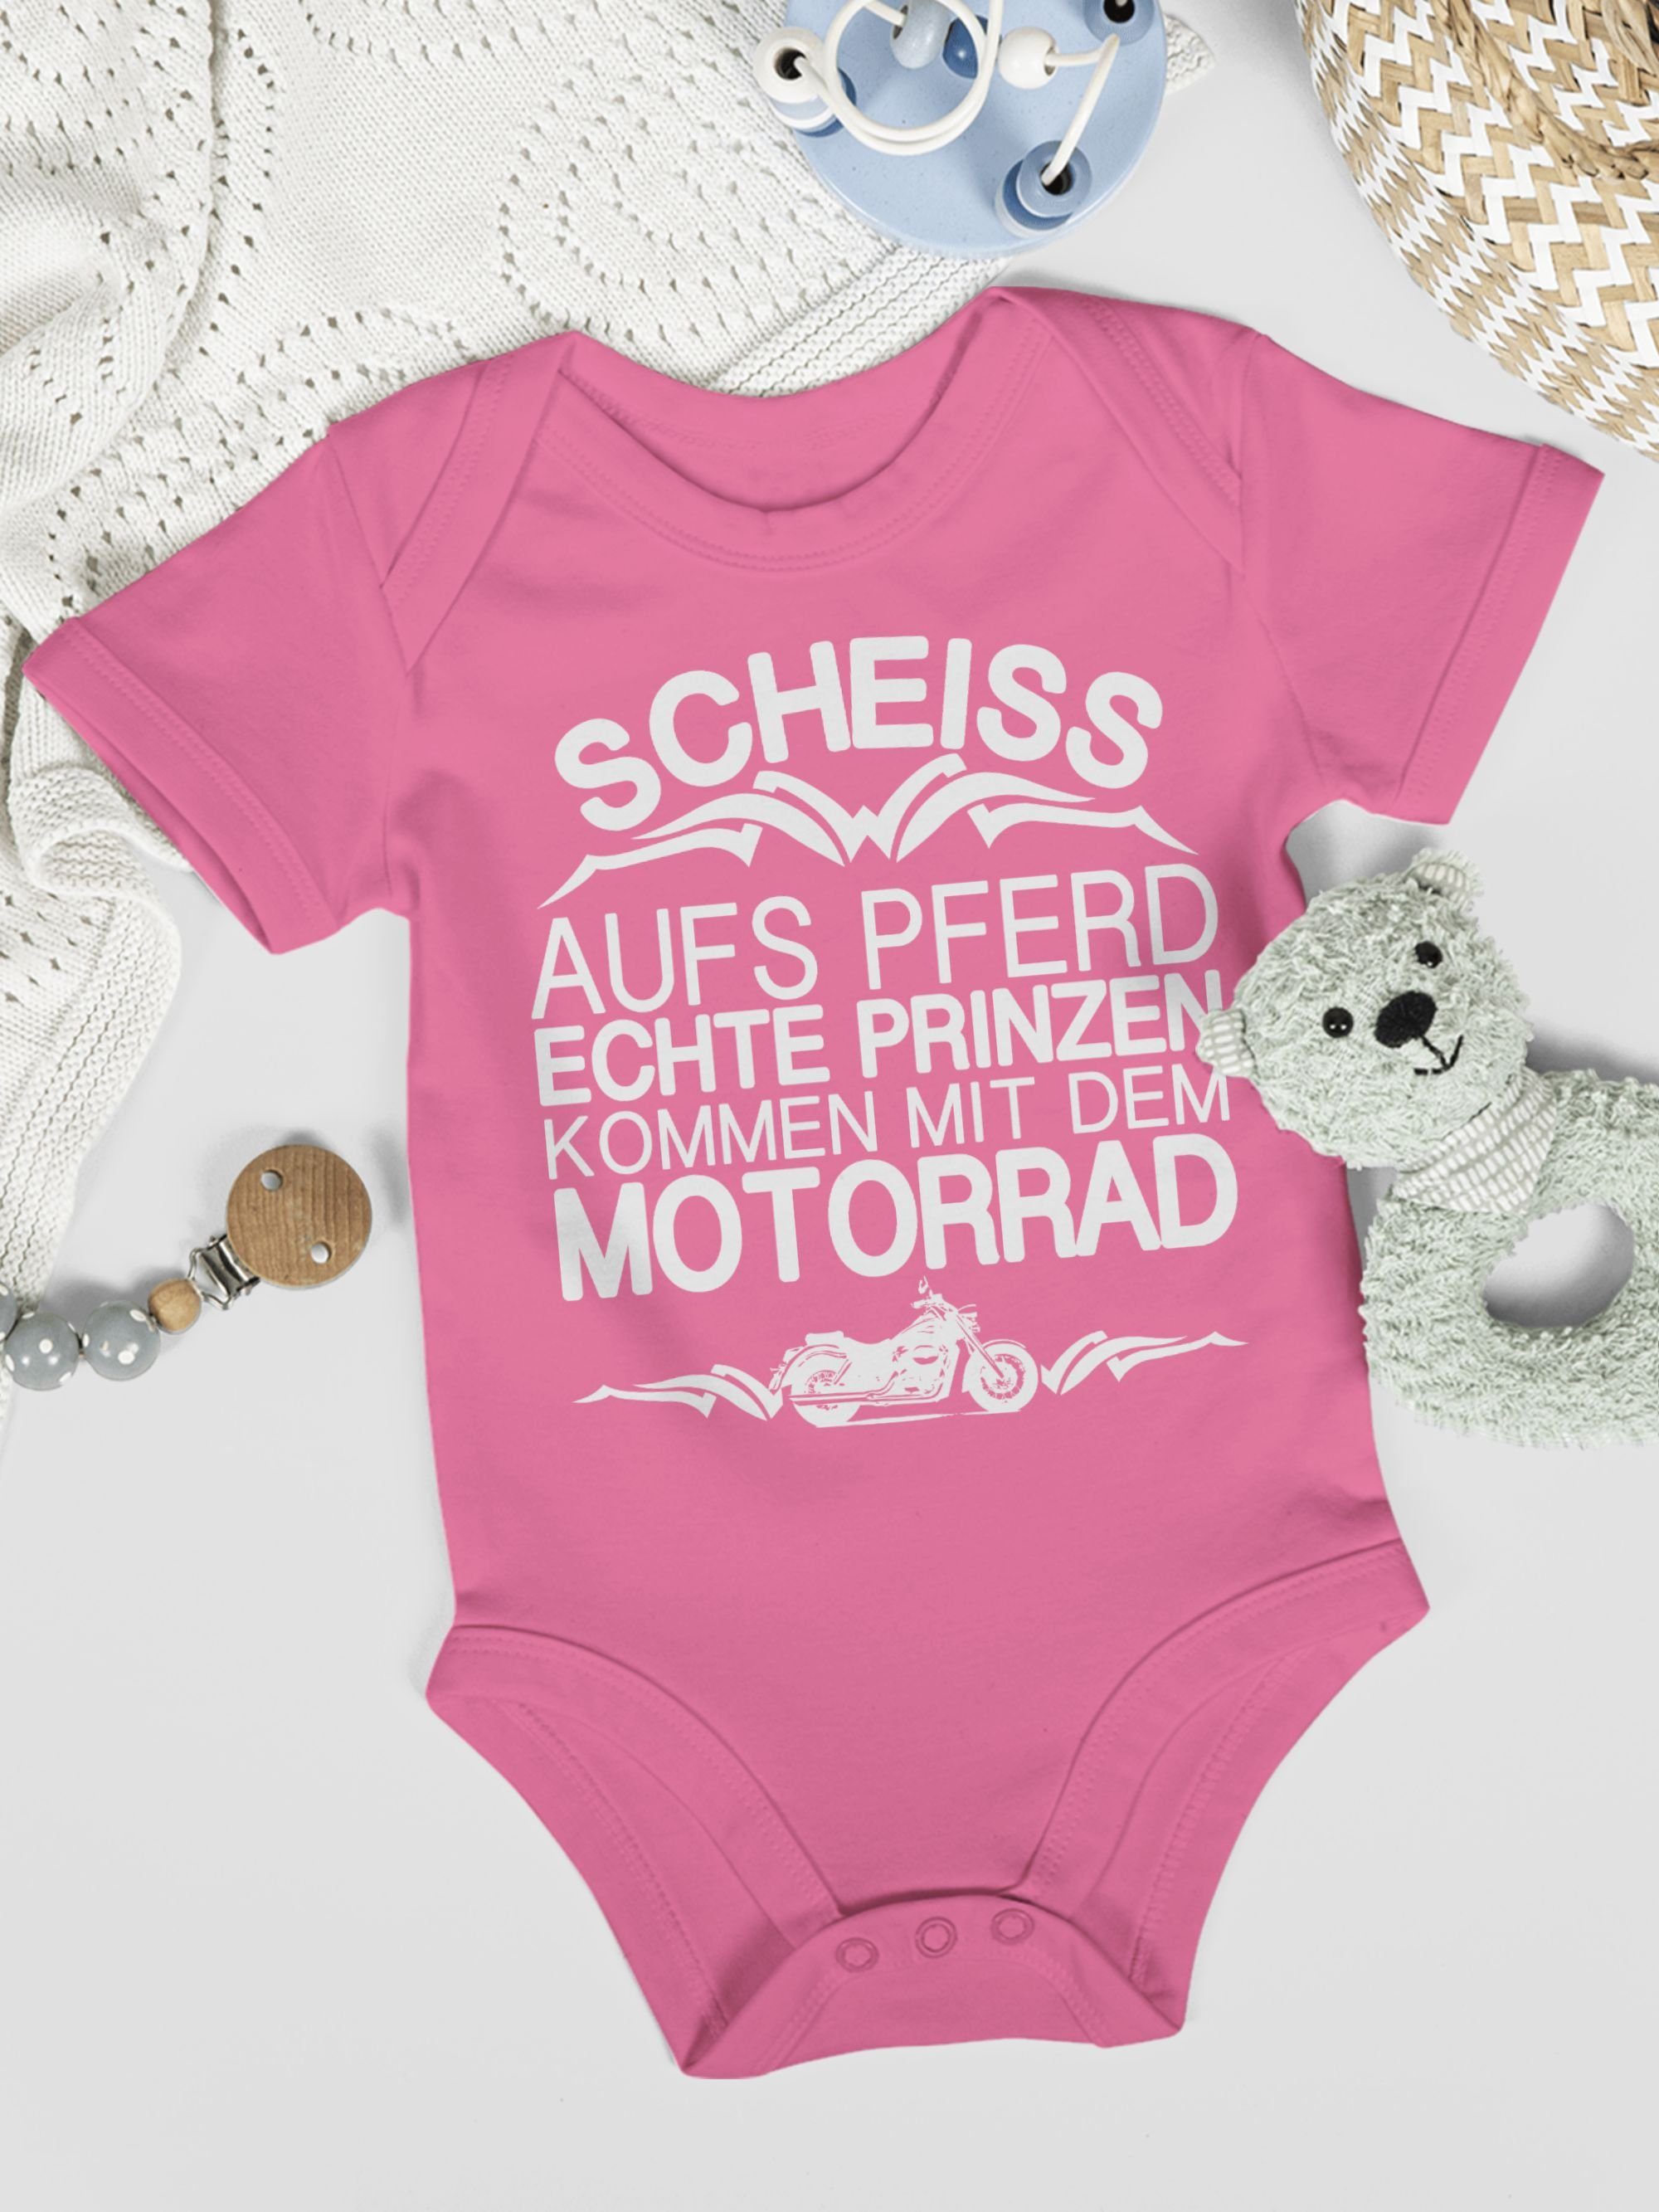 3 Scheiß Shirtracer mit Prinzen Shirtbody dem Sprüche Baby kommen Motorrad aufs echte Pink Pferd